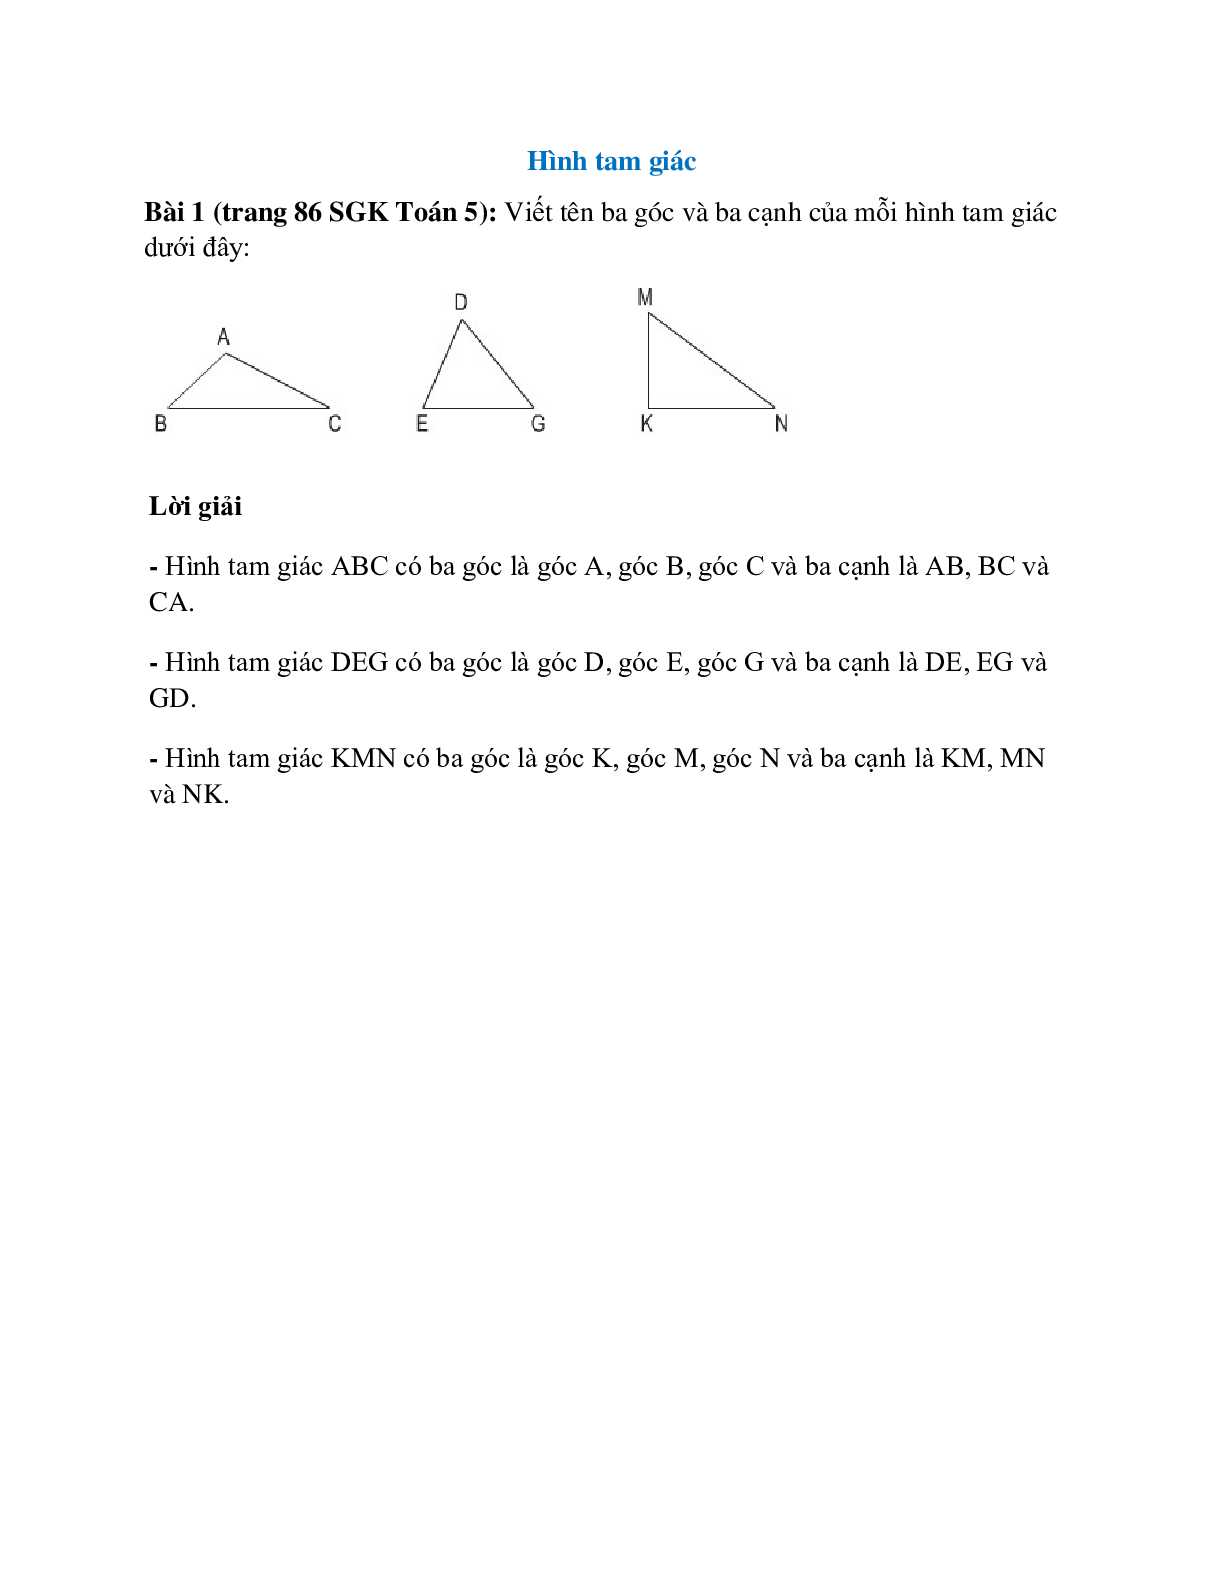 Viết tên ba góc và ba cạnh của mỗi hình tam giác dưới đây (trang 1)